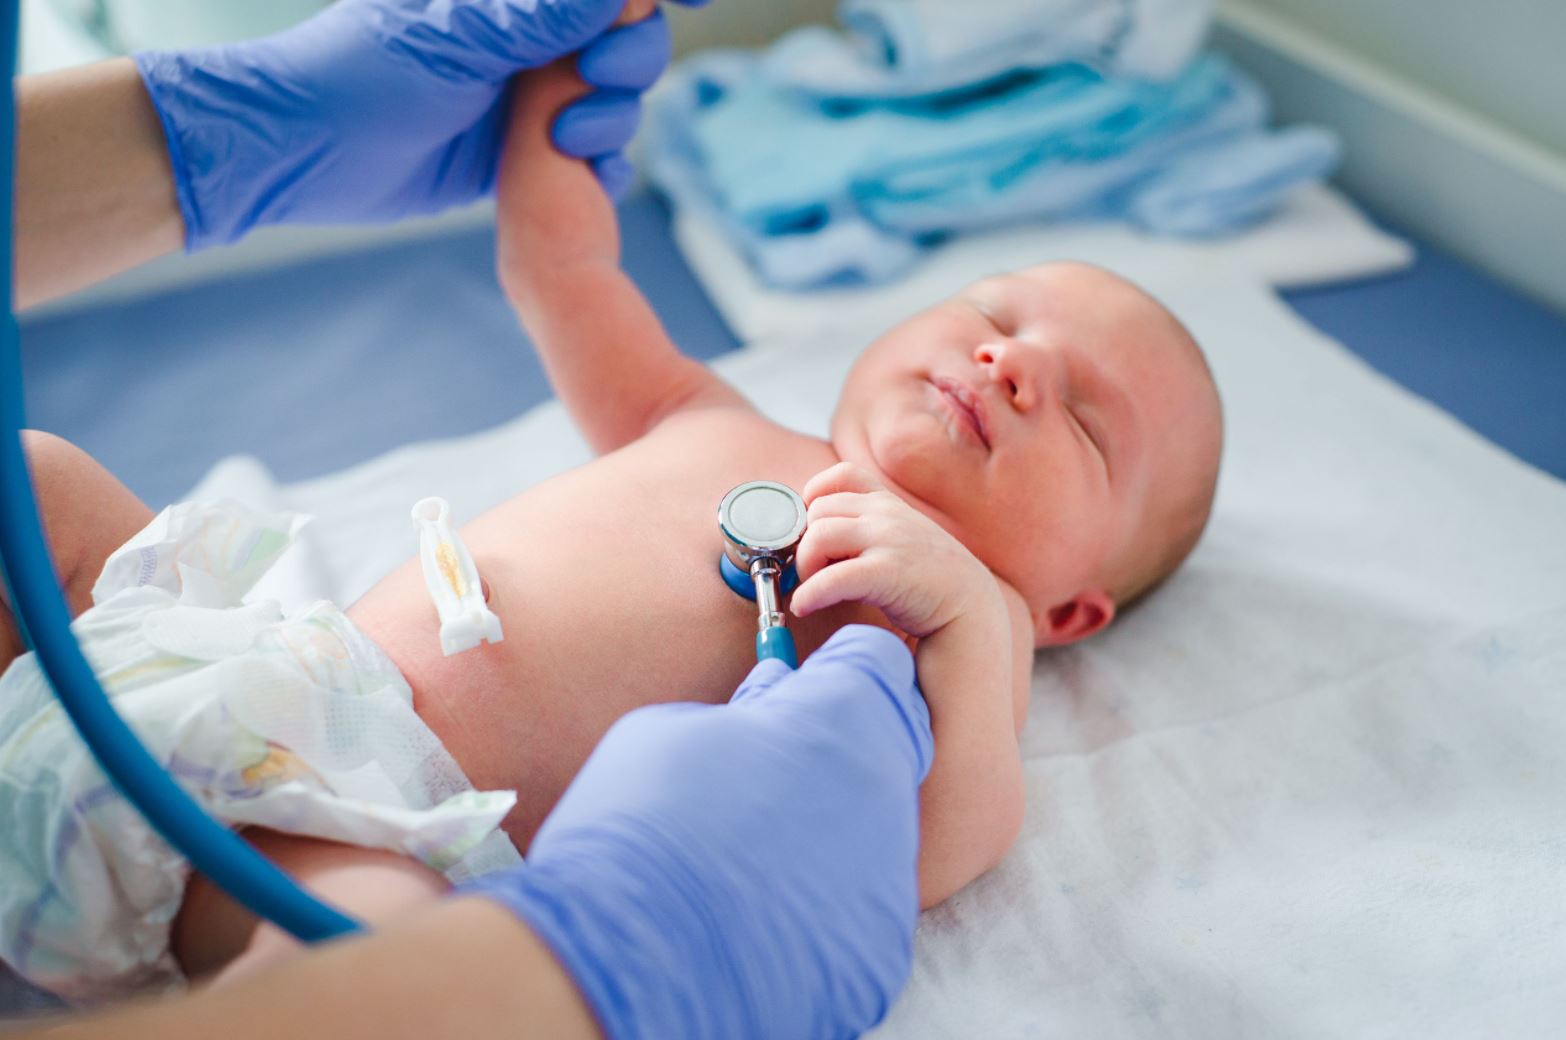 В Пярнуской больнице впервые родился коронаположительный ребенок